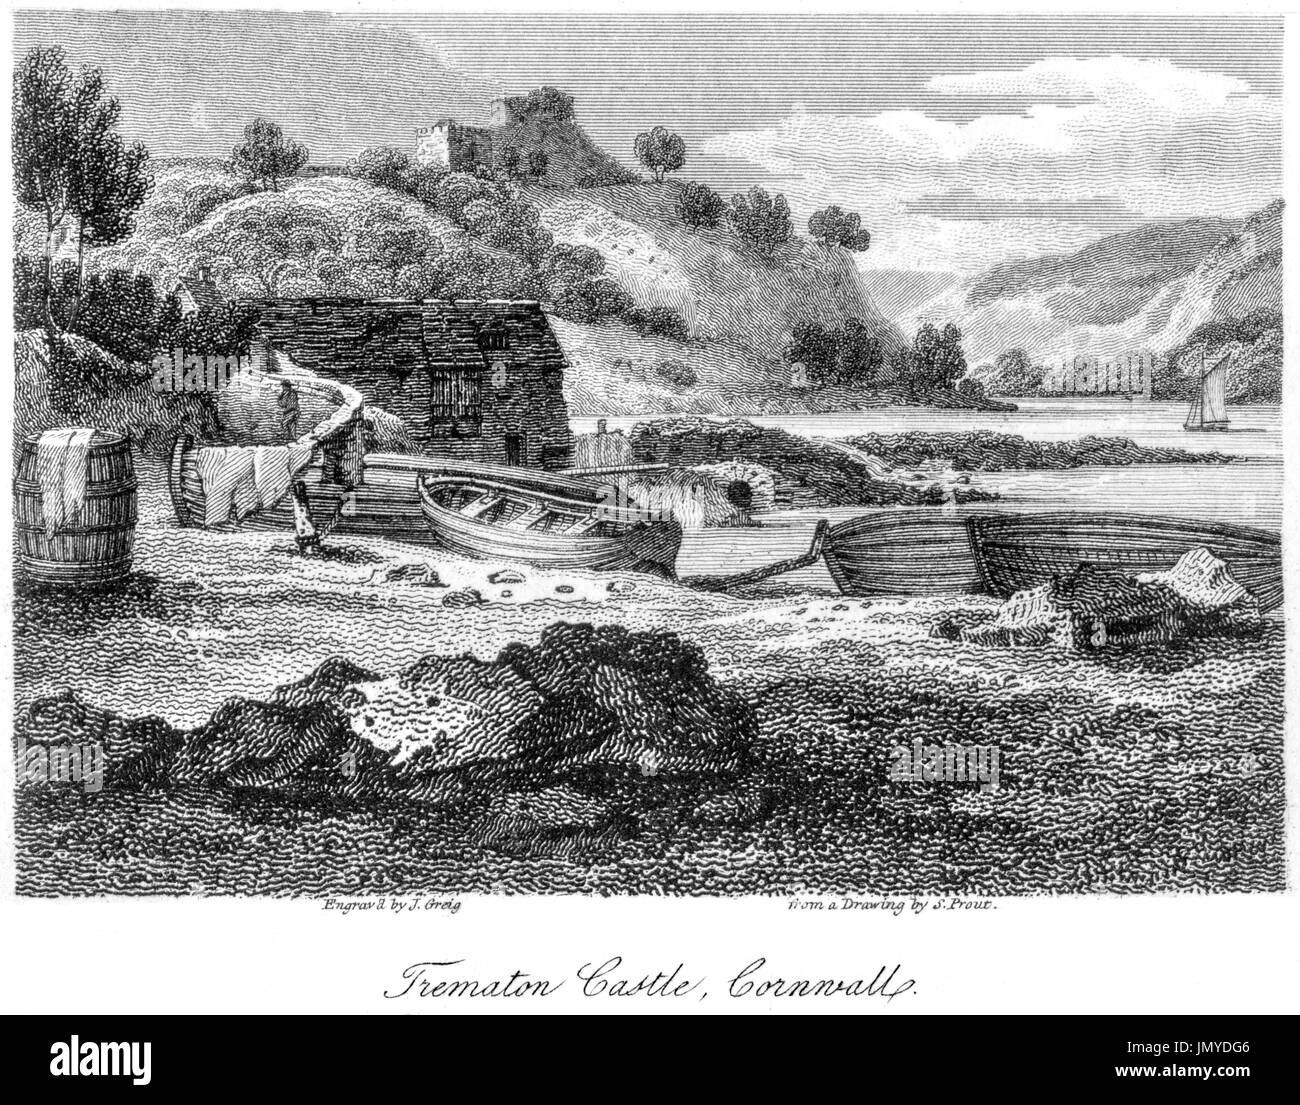 Eine Gravur der Trematon Burg, Cornwall mit hoher Auflösung aus einem Buch gescannt gedruckt im Jahre 1808.  Kostenlos copyright geglaubt. Stockfoto